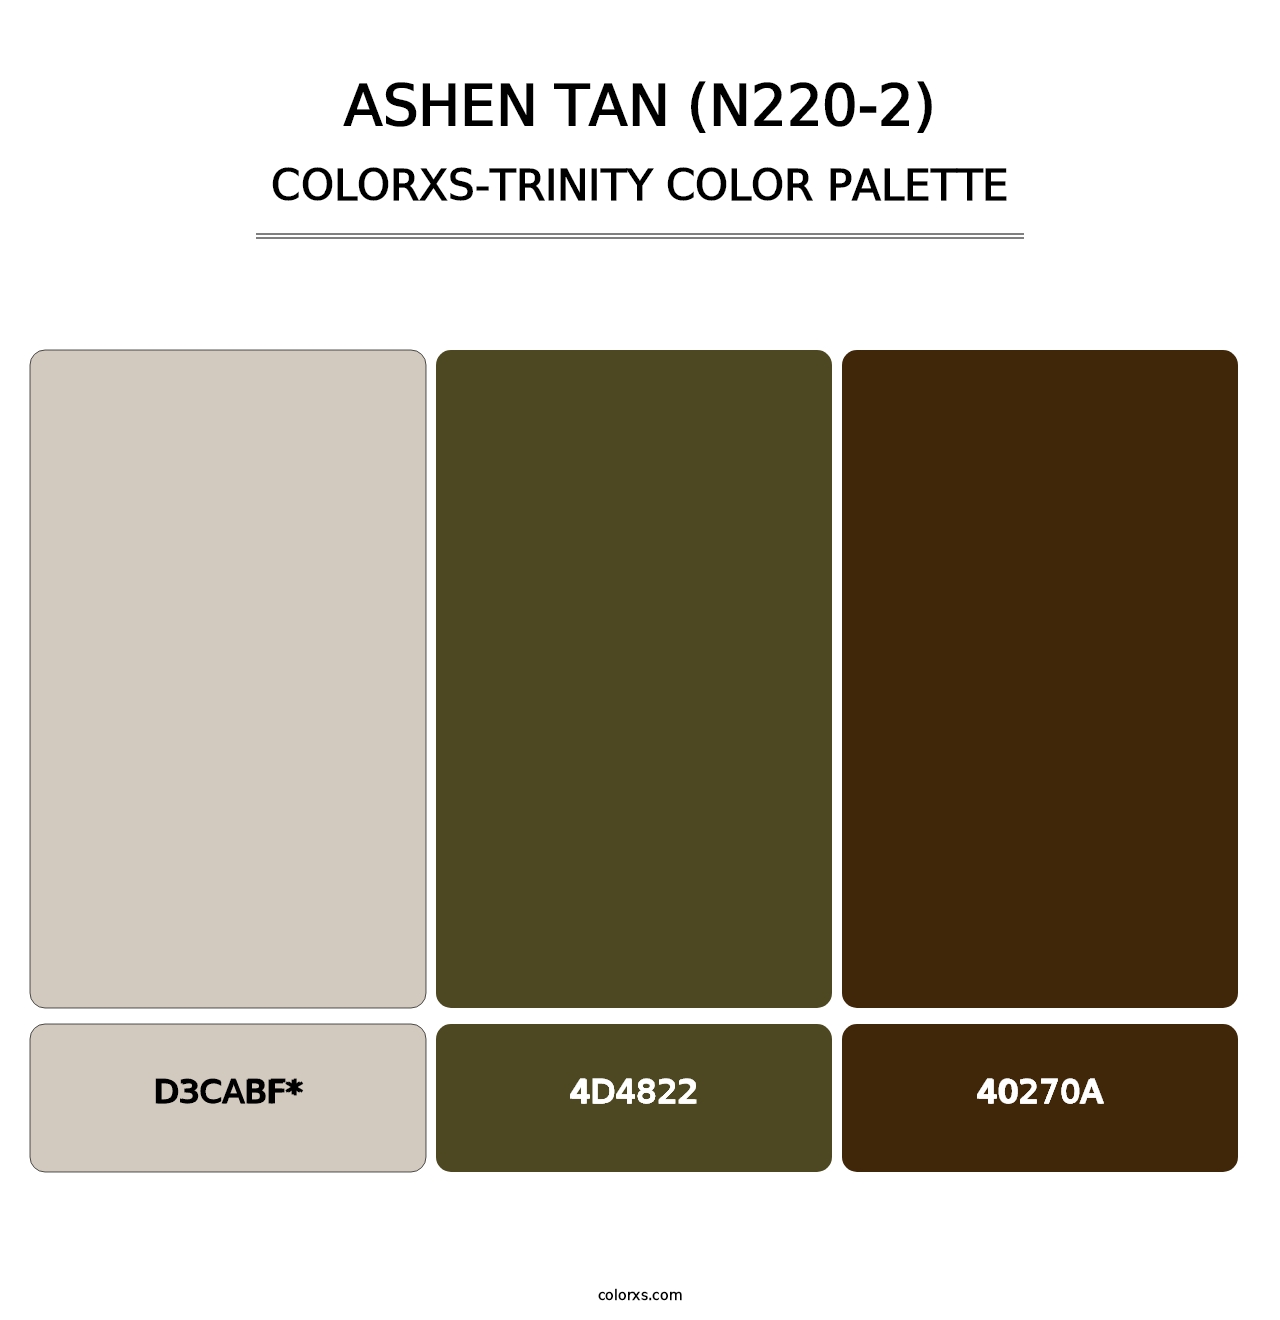 Ashen Tan (N220-2) - Colorxs Trinity Palette